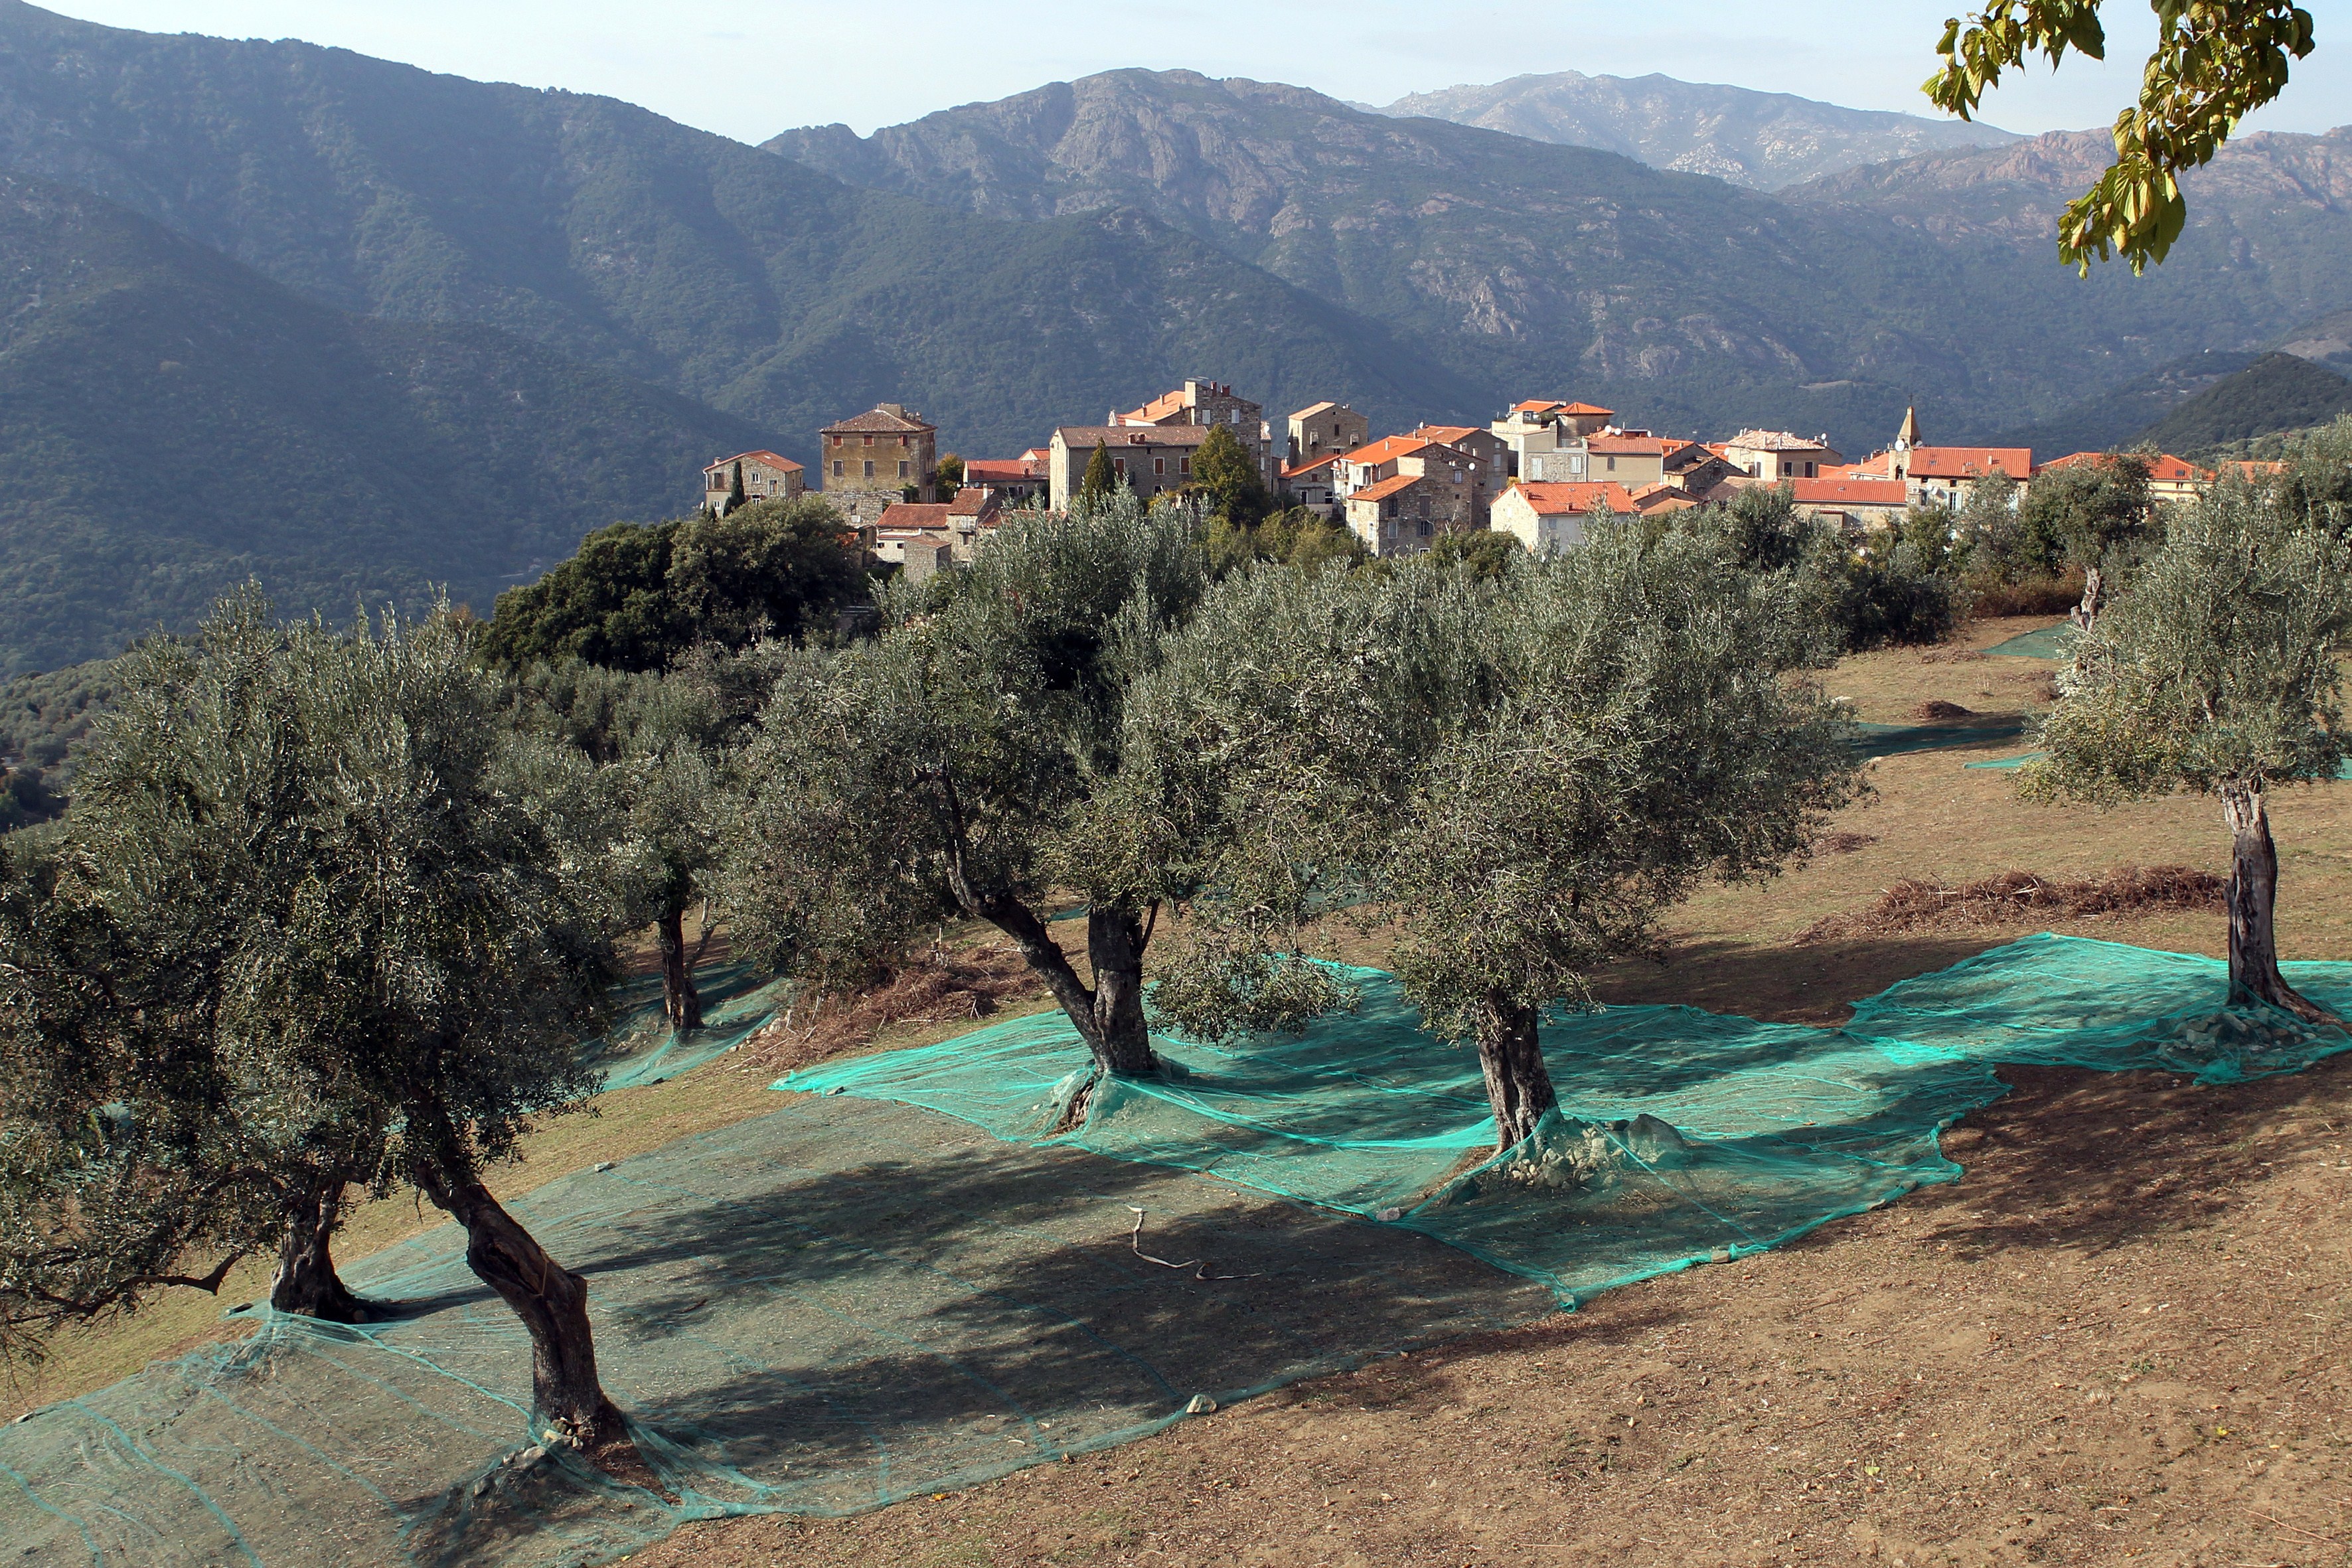 Olivenölproduktion in Frankreich mit schwacher Ernte 2016/17